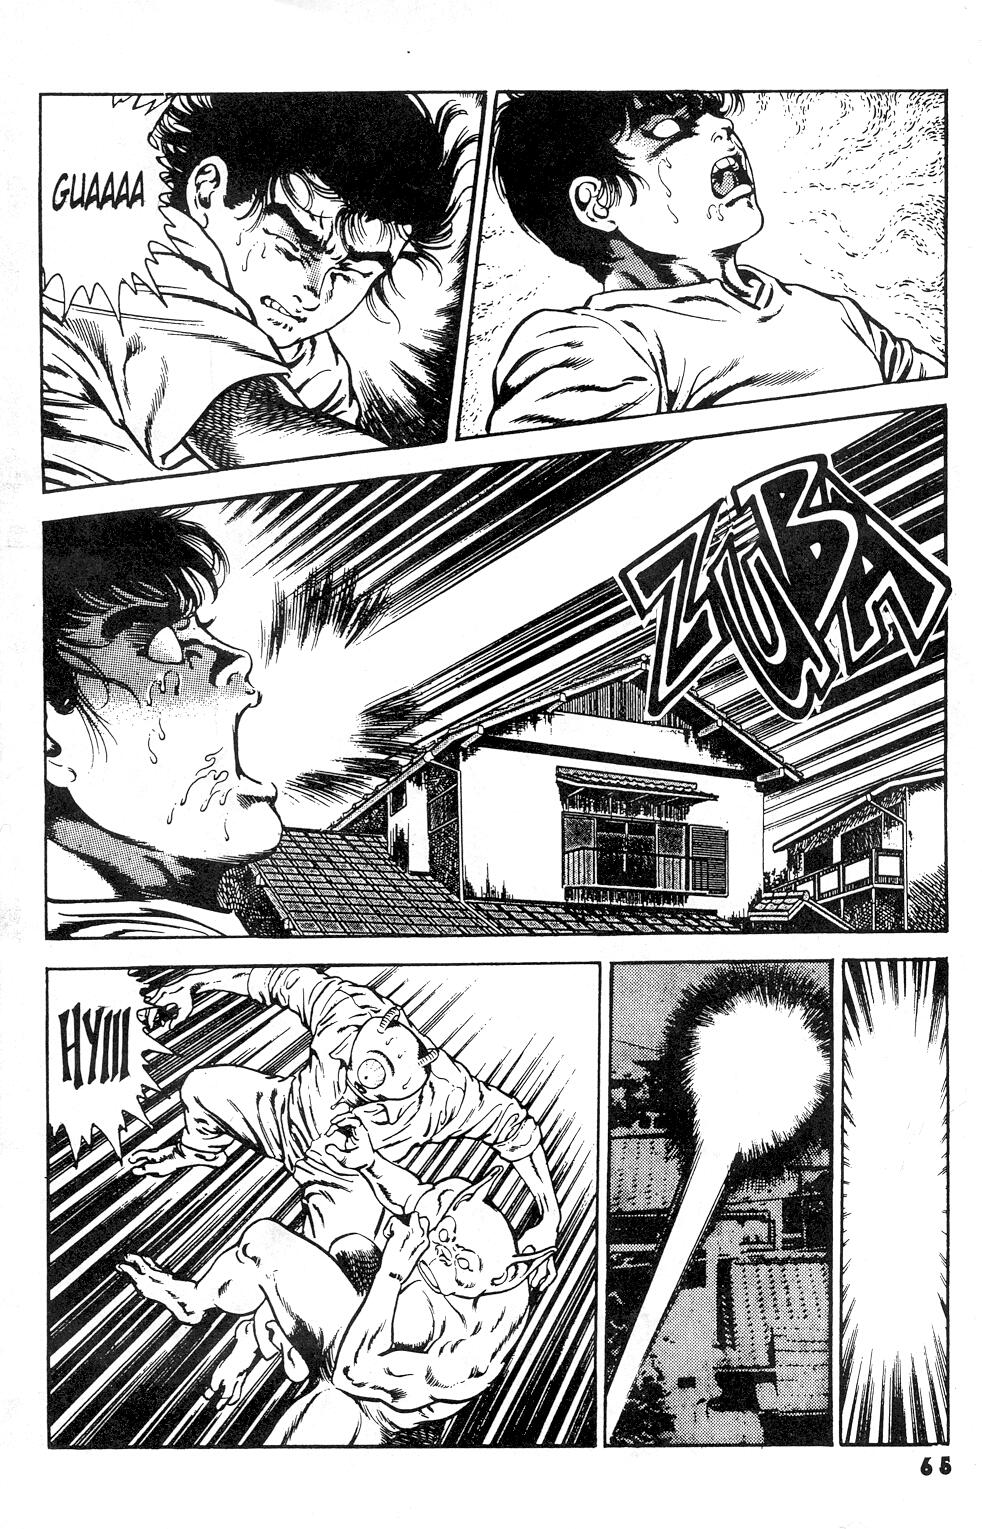 Urotsuki3 - Urotsuki Douji Vol.3 Ch.3 - Page 3 - HentaiEra